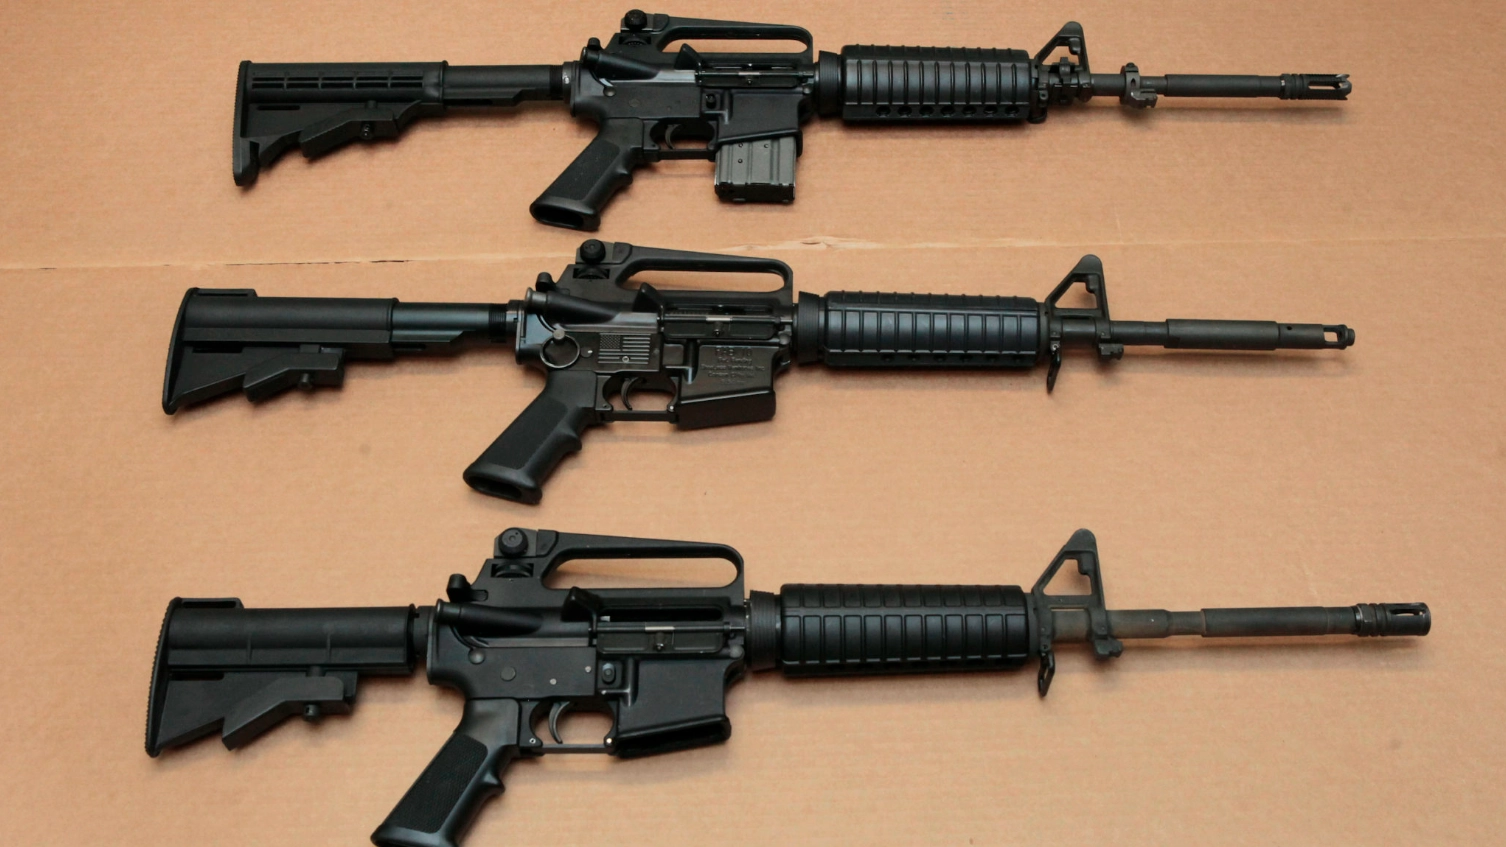 L'AR-15 è diventato il fucile più diffuso e utilizzato negli Stati Uniti. La NRA (National Rifle Association) stima che ci siano circa otto milioni di AR-15 e sue varianti in circolazione nel paese